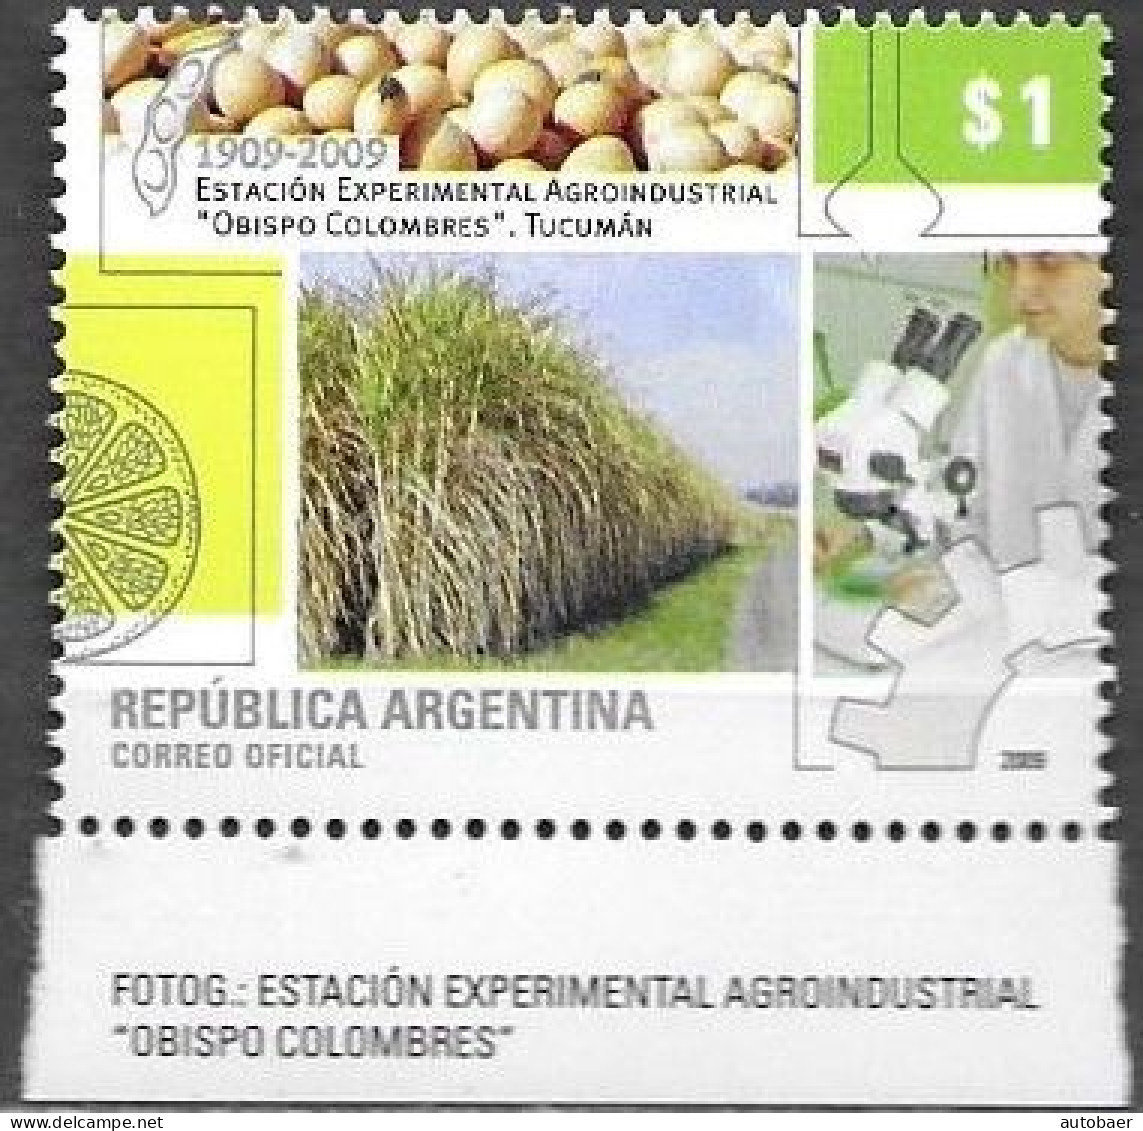 Argentina 2009 Agroindustrial Station Estacion Bishop Obispo Colombres Tucuman Michel 3254 MNH Postfrisch Neuf ** - Ongebruikt